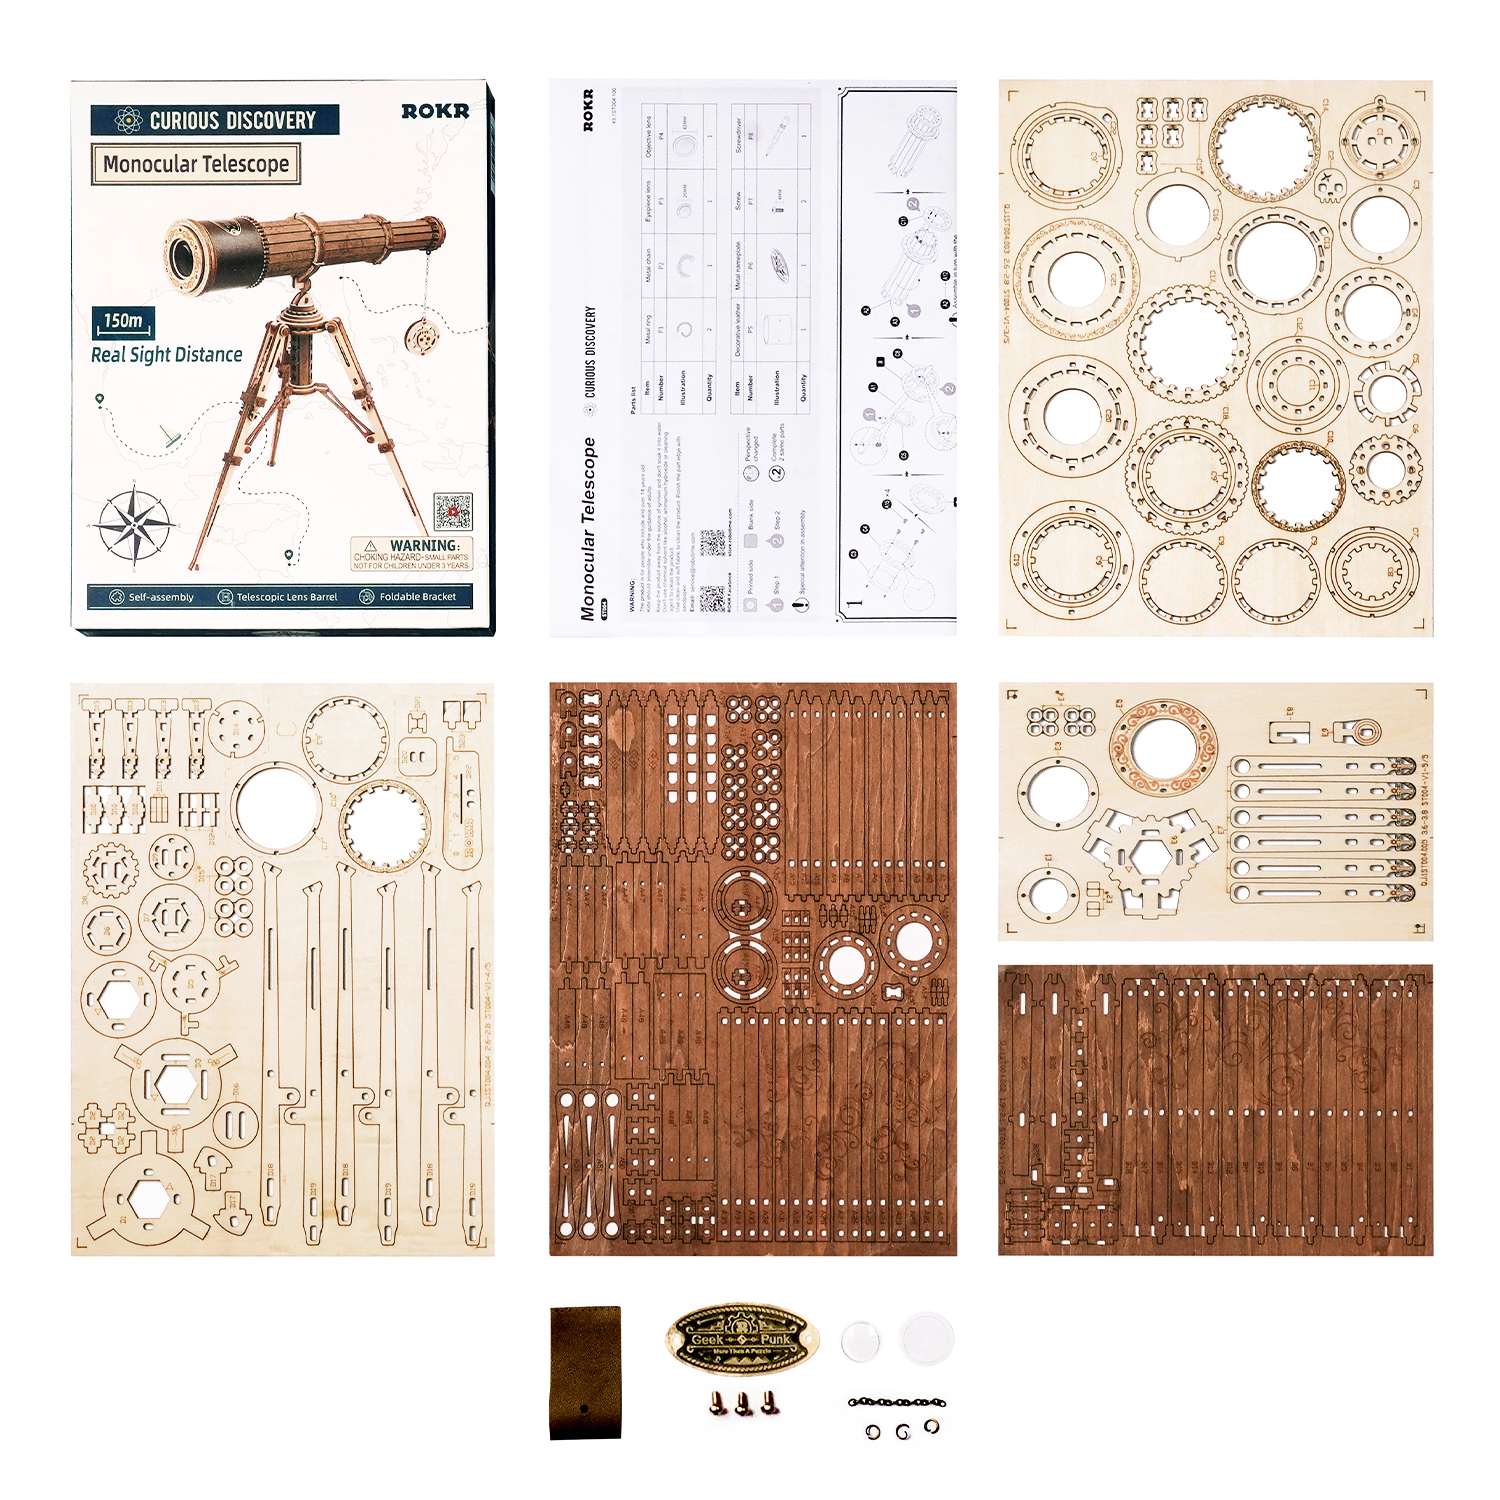 Maqueta Telescopio Monocular de Robotime. Maquetas de madera para construir.